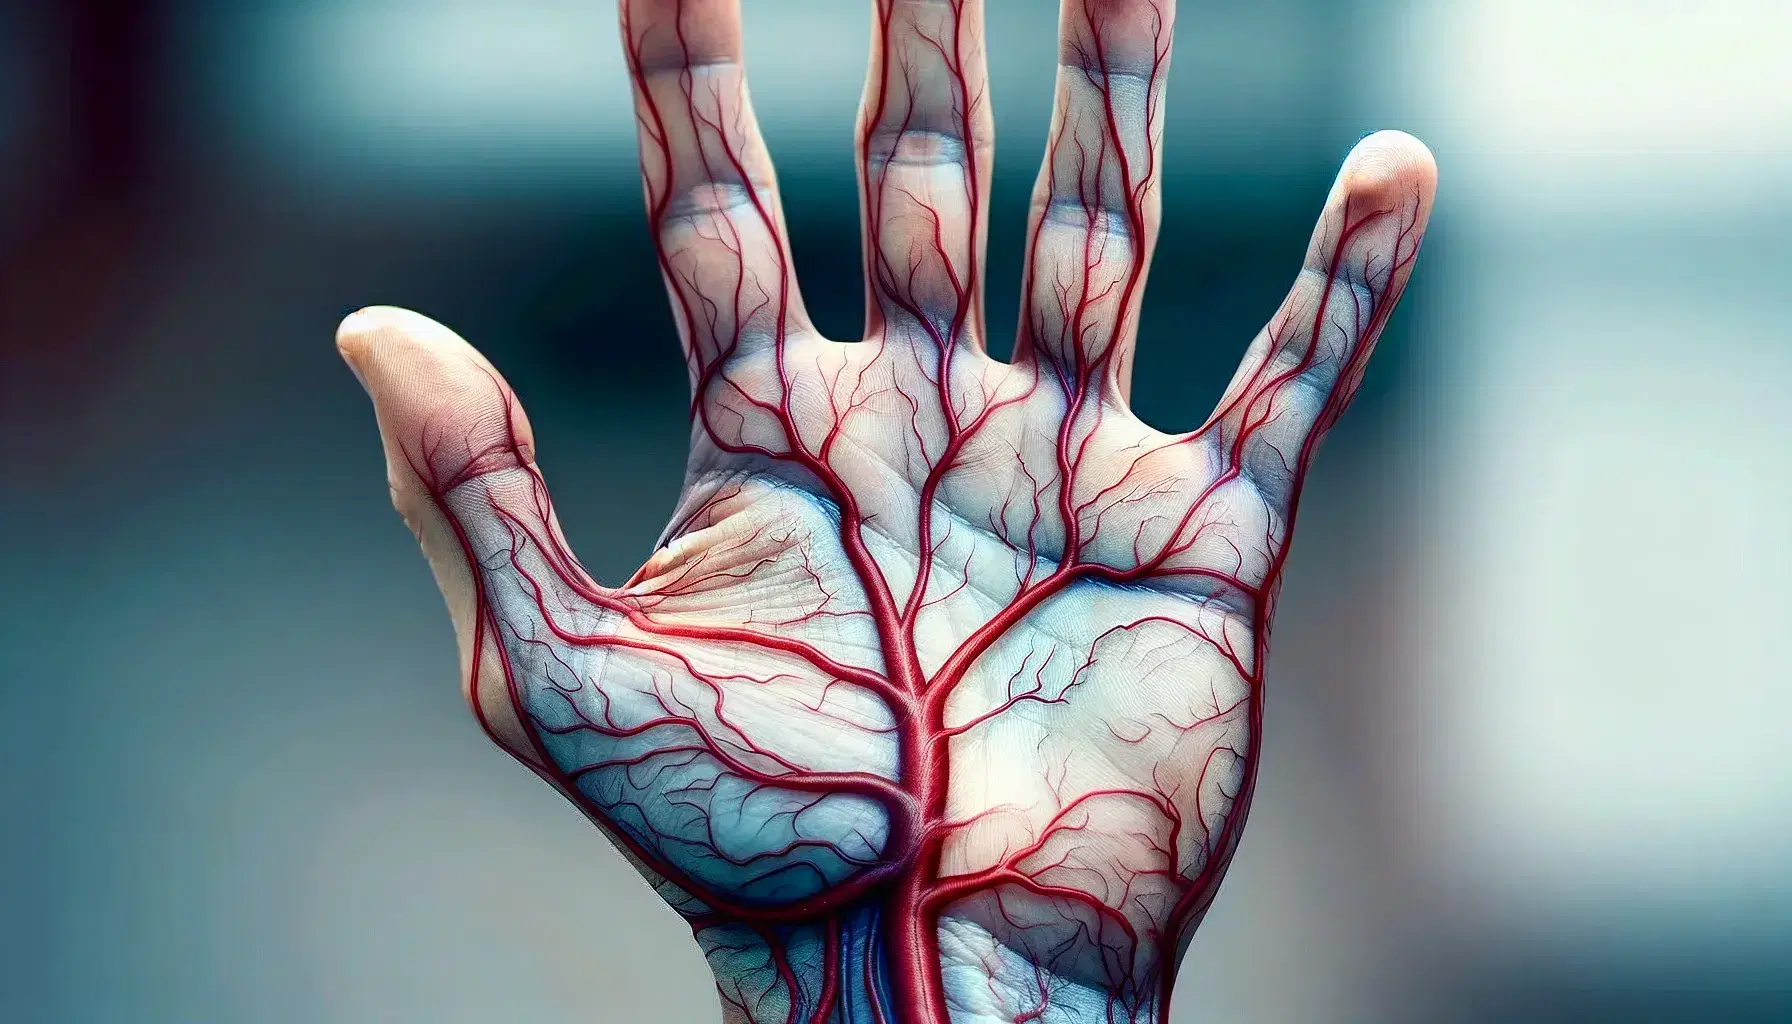 Mano umana con pelle traslucida che mostra vasi sanguigni, arterie rosse e vene blu, su sfondo sfocato.